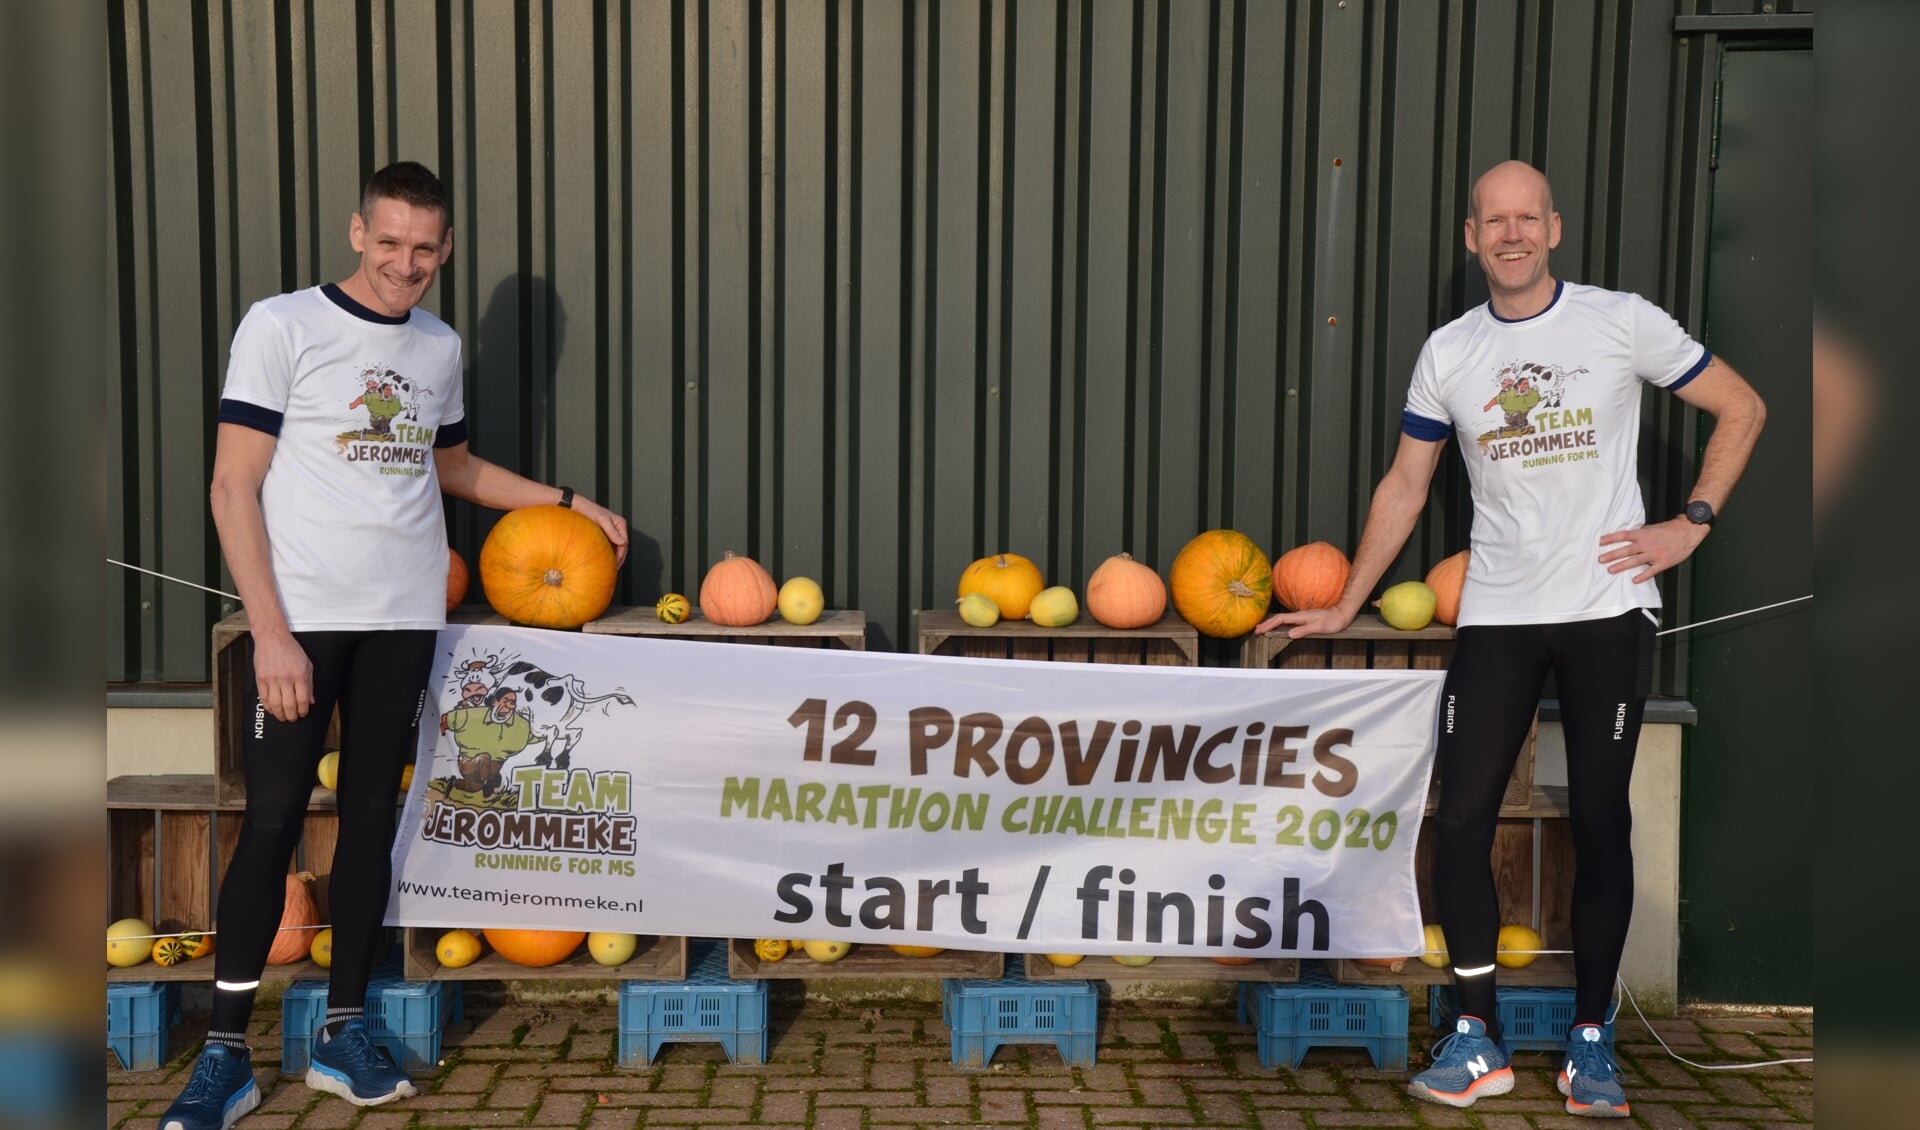 René Vernooij en Berend Schotanus lopen als Team Jerommeke 12 marathons